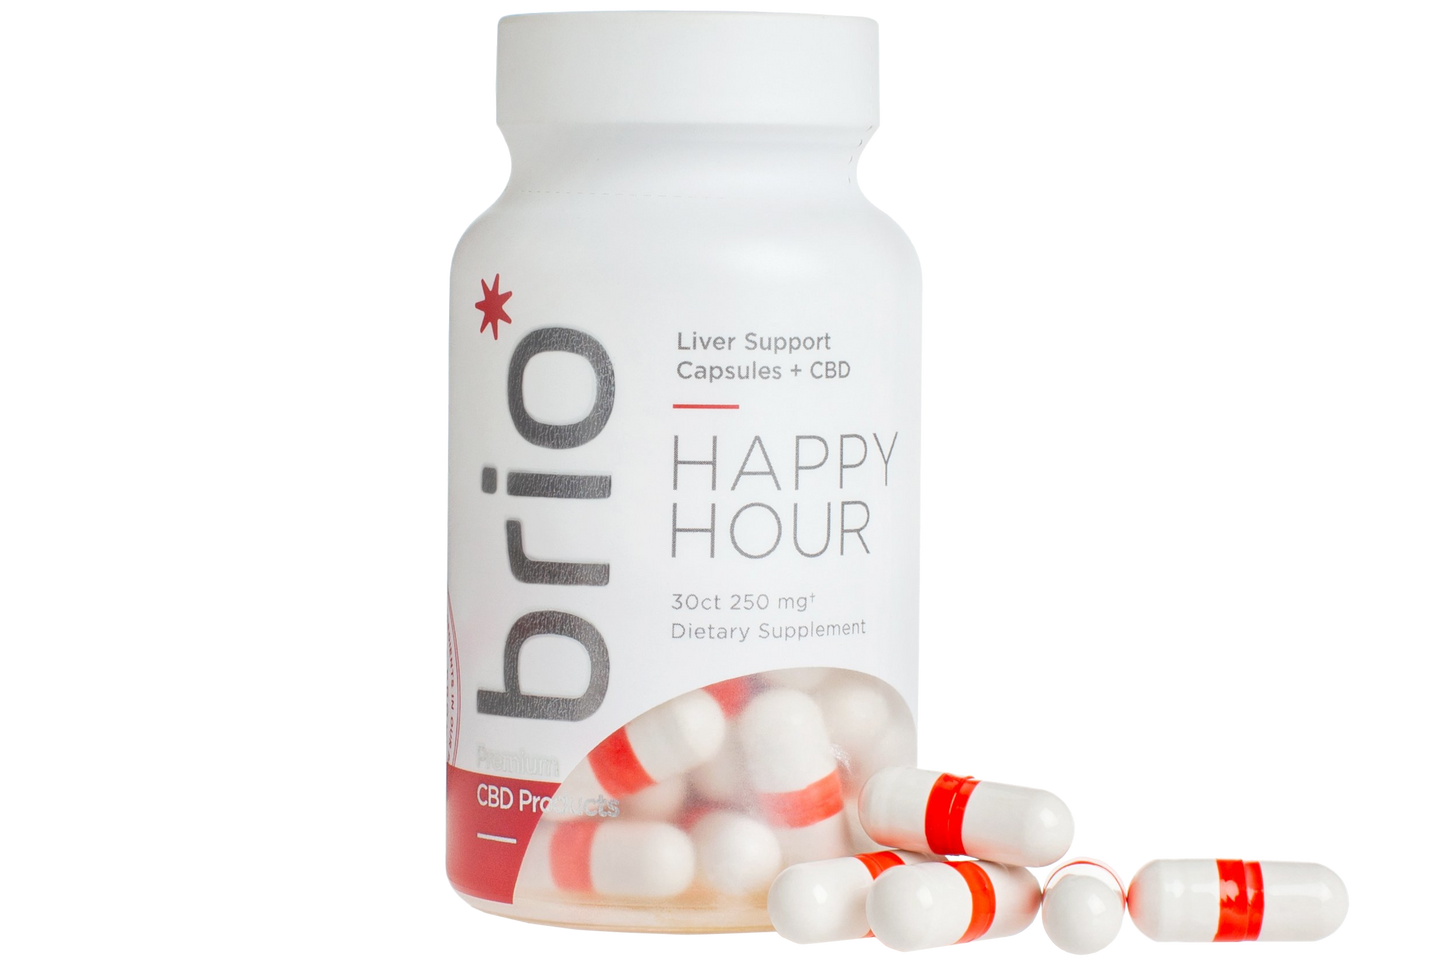 Brio Broad Spectrum CBD Capsules, Happy Hour - 30ct (a Capsules) made by Brio Nutrition sold at CBD Emporium